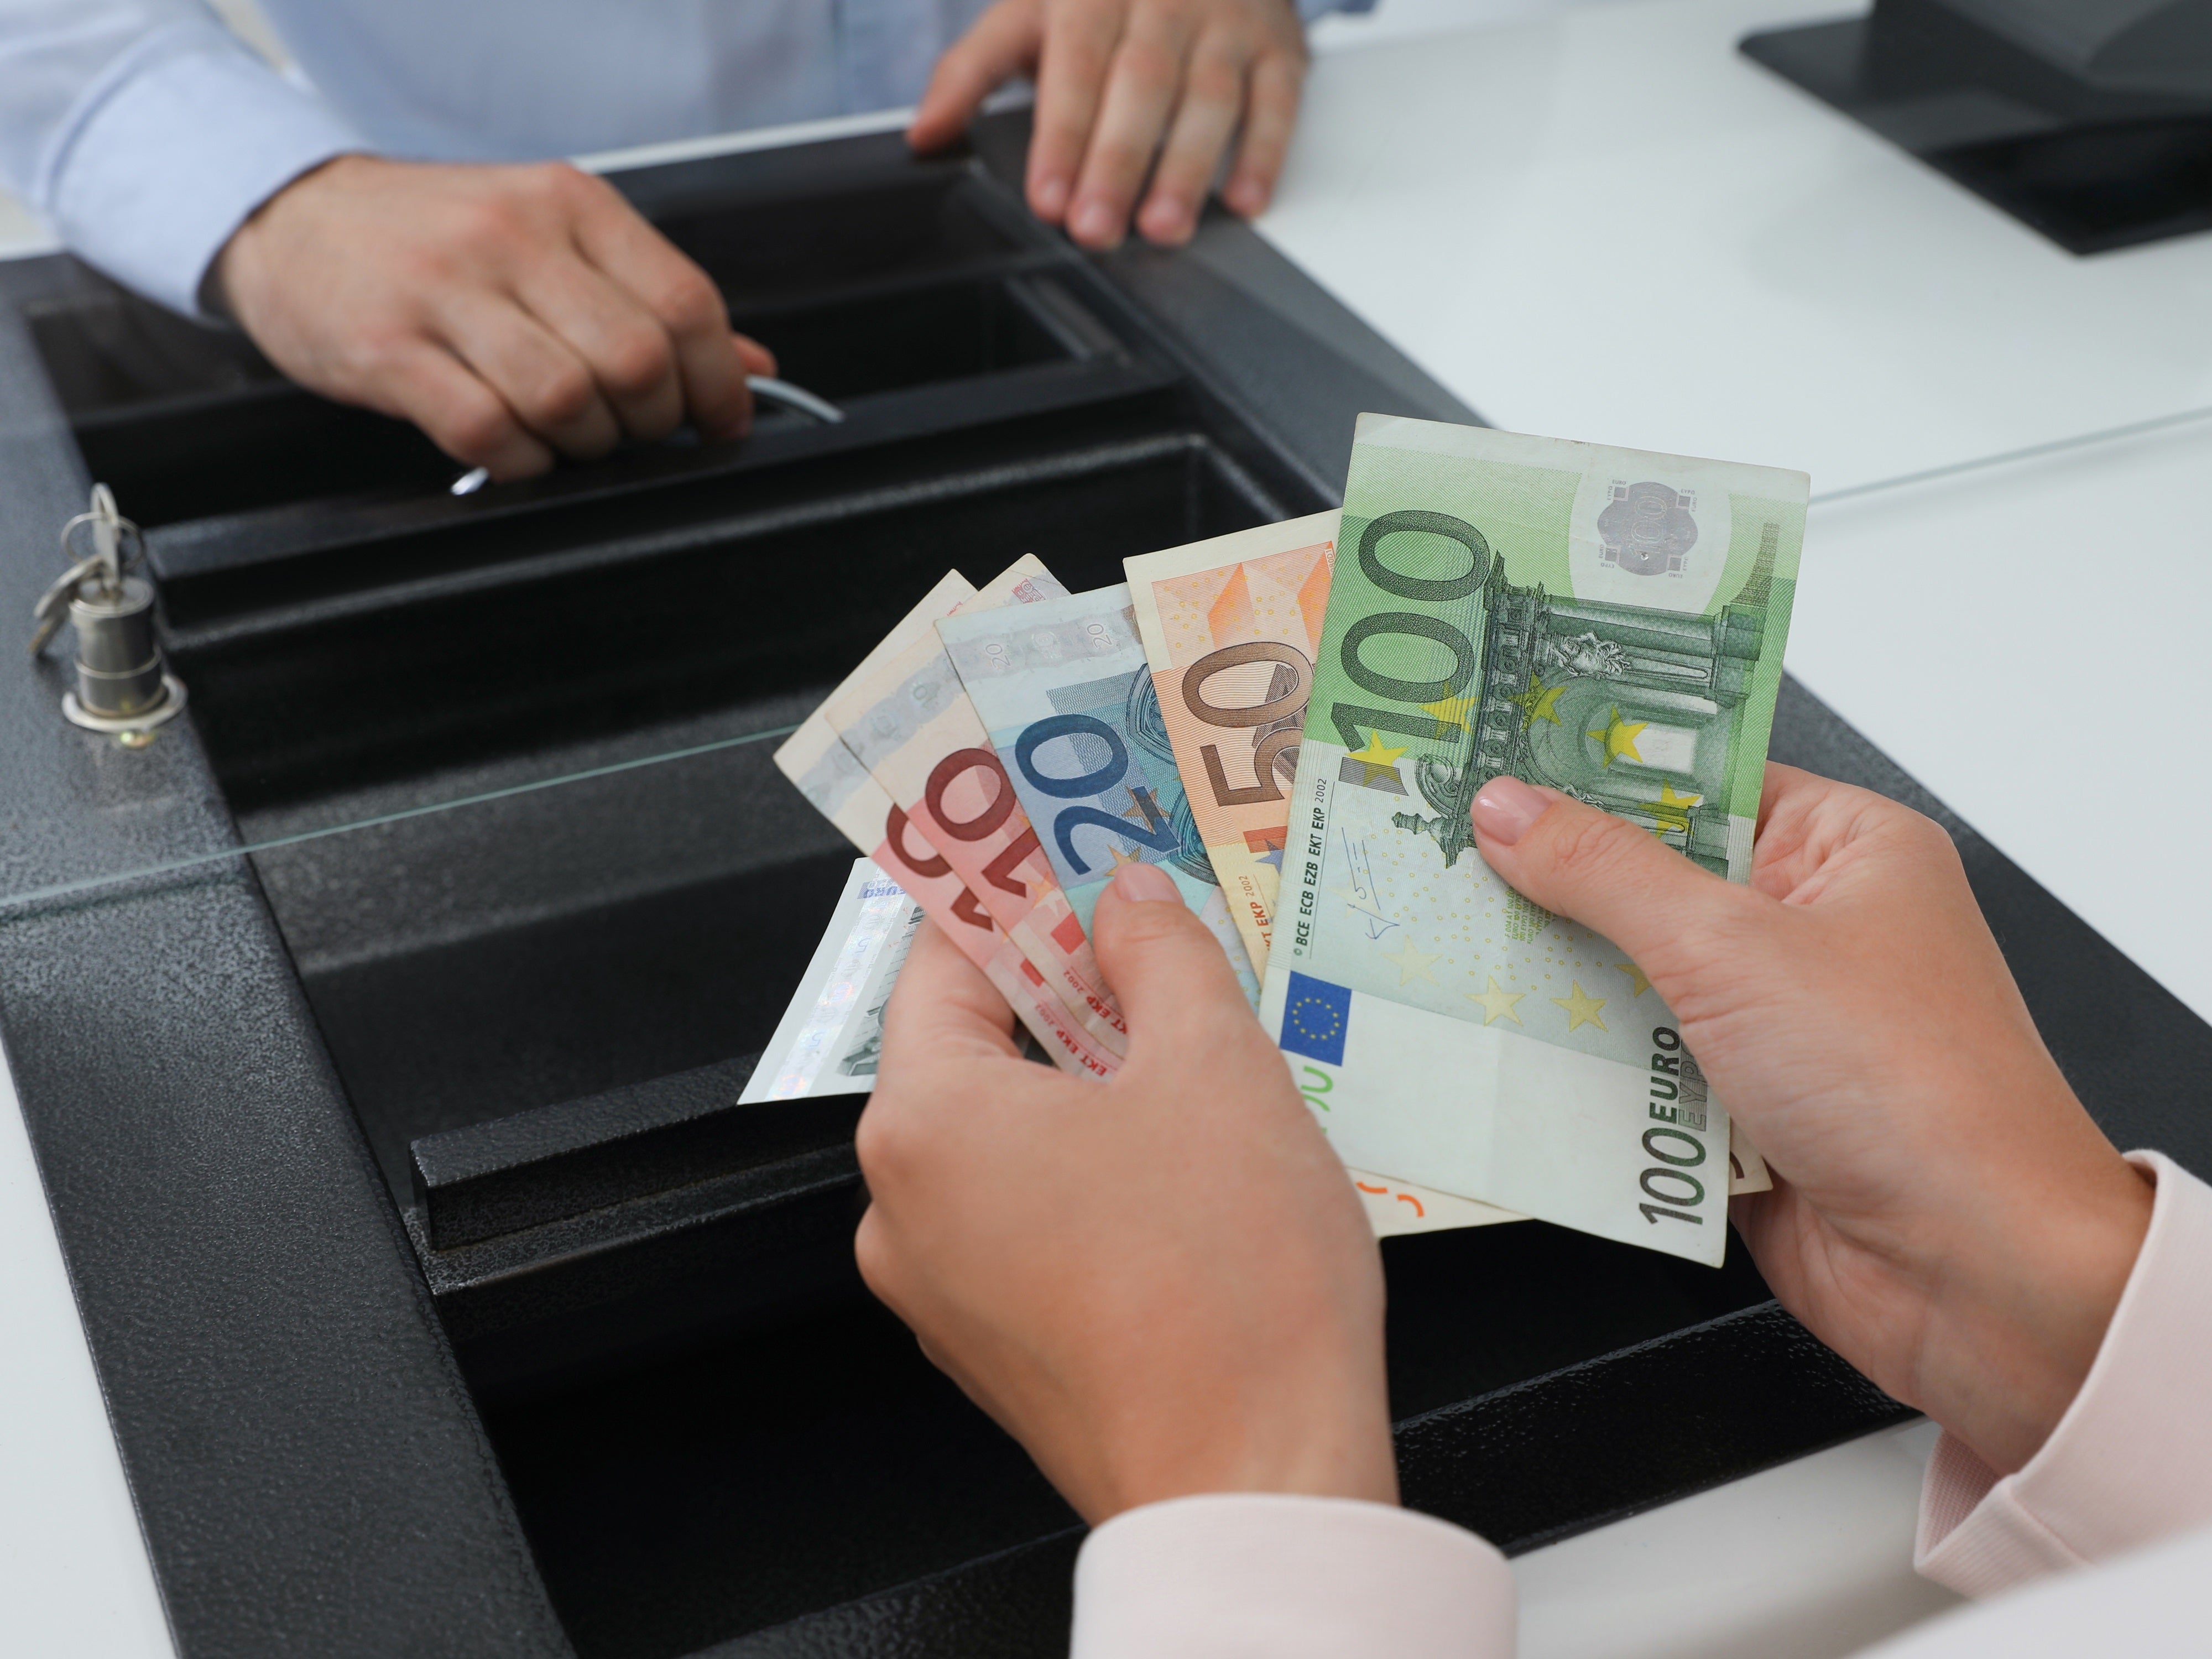 #Kostensenkung: Bankkunden sollen weniger zahlen